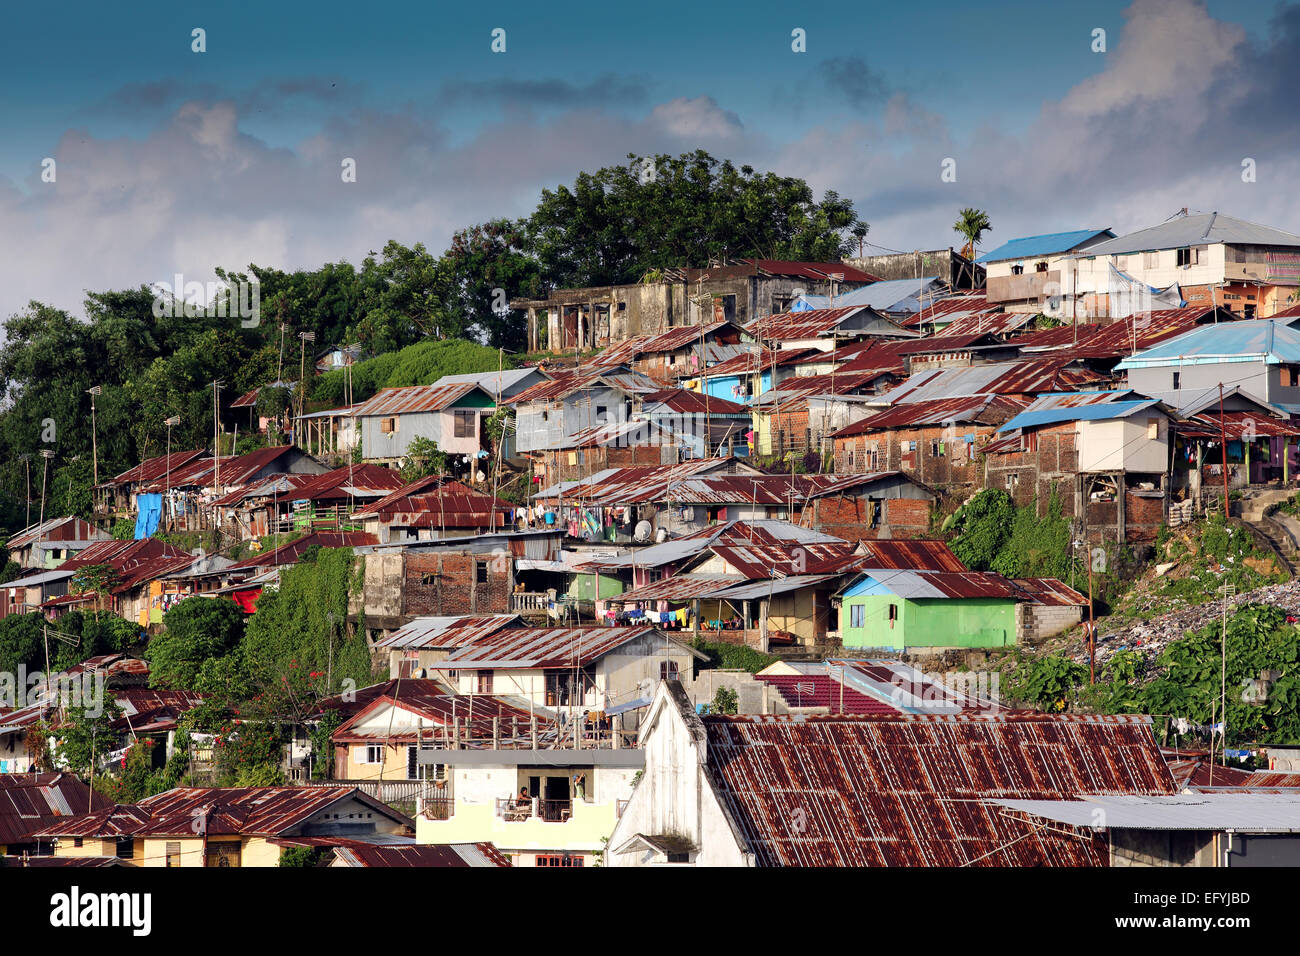 Poor neighborhood with basic housing in Manado city, Sulawesi Stock Photo